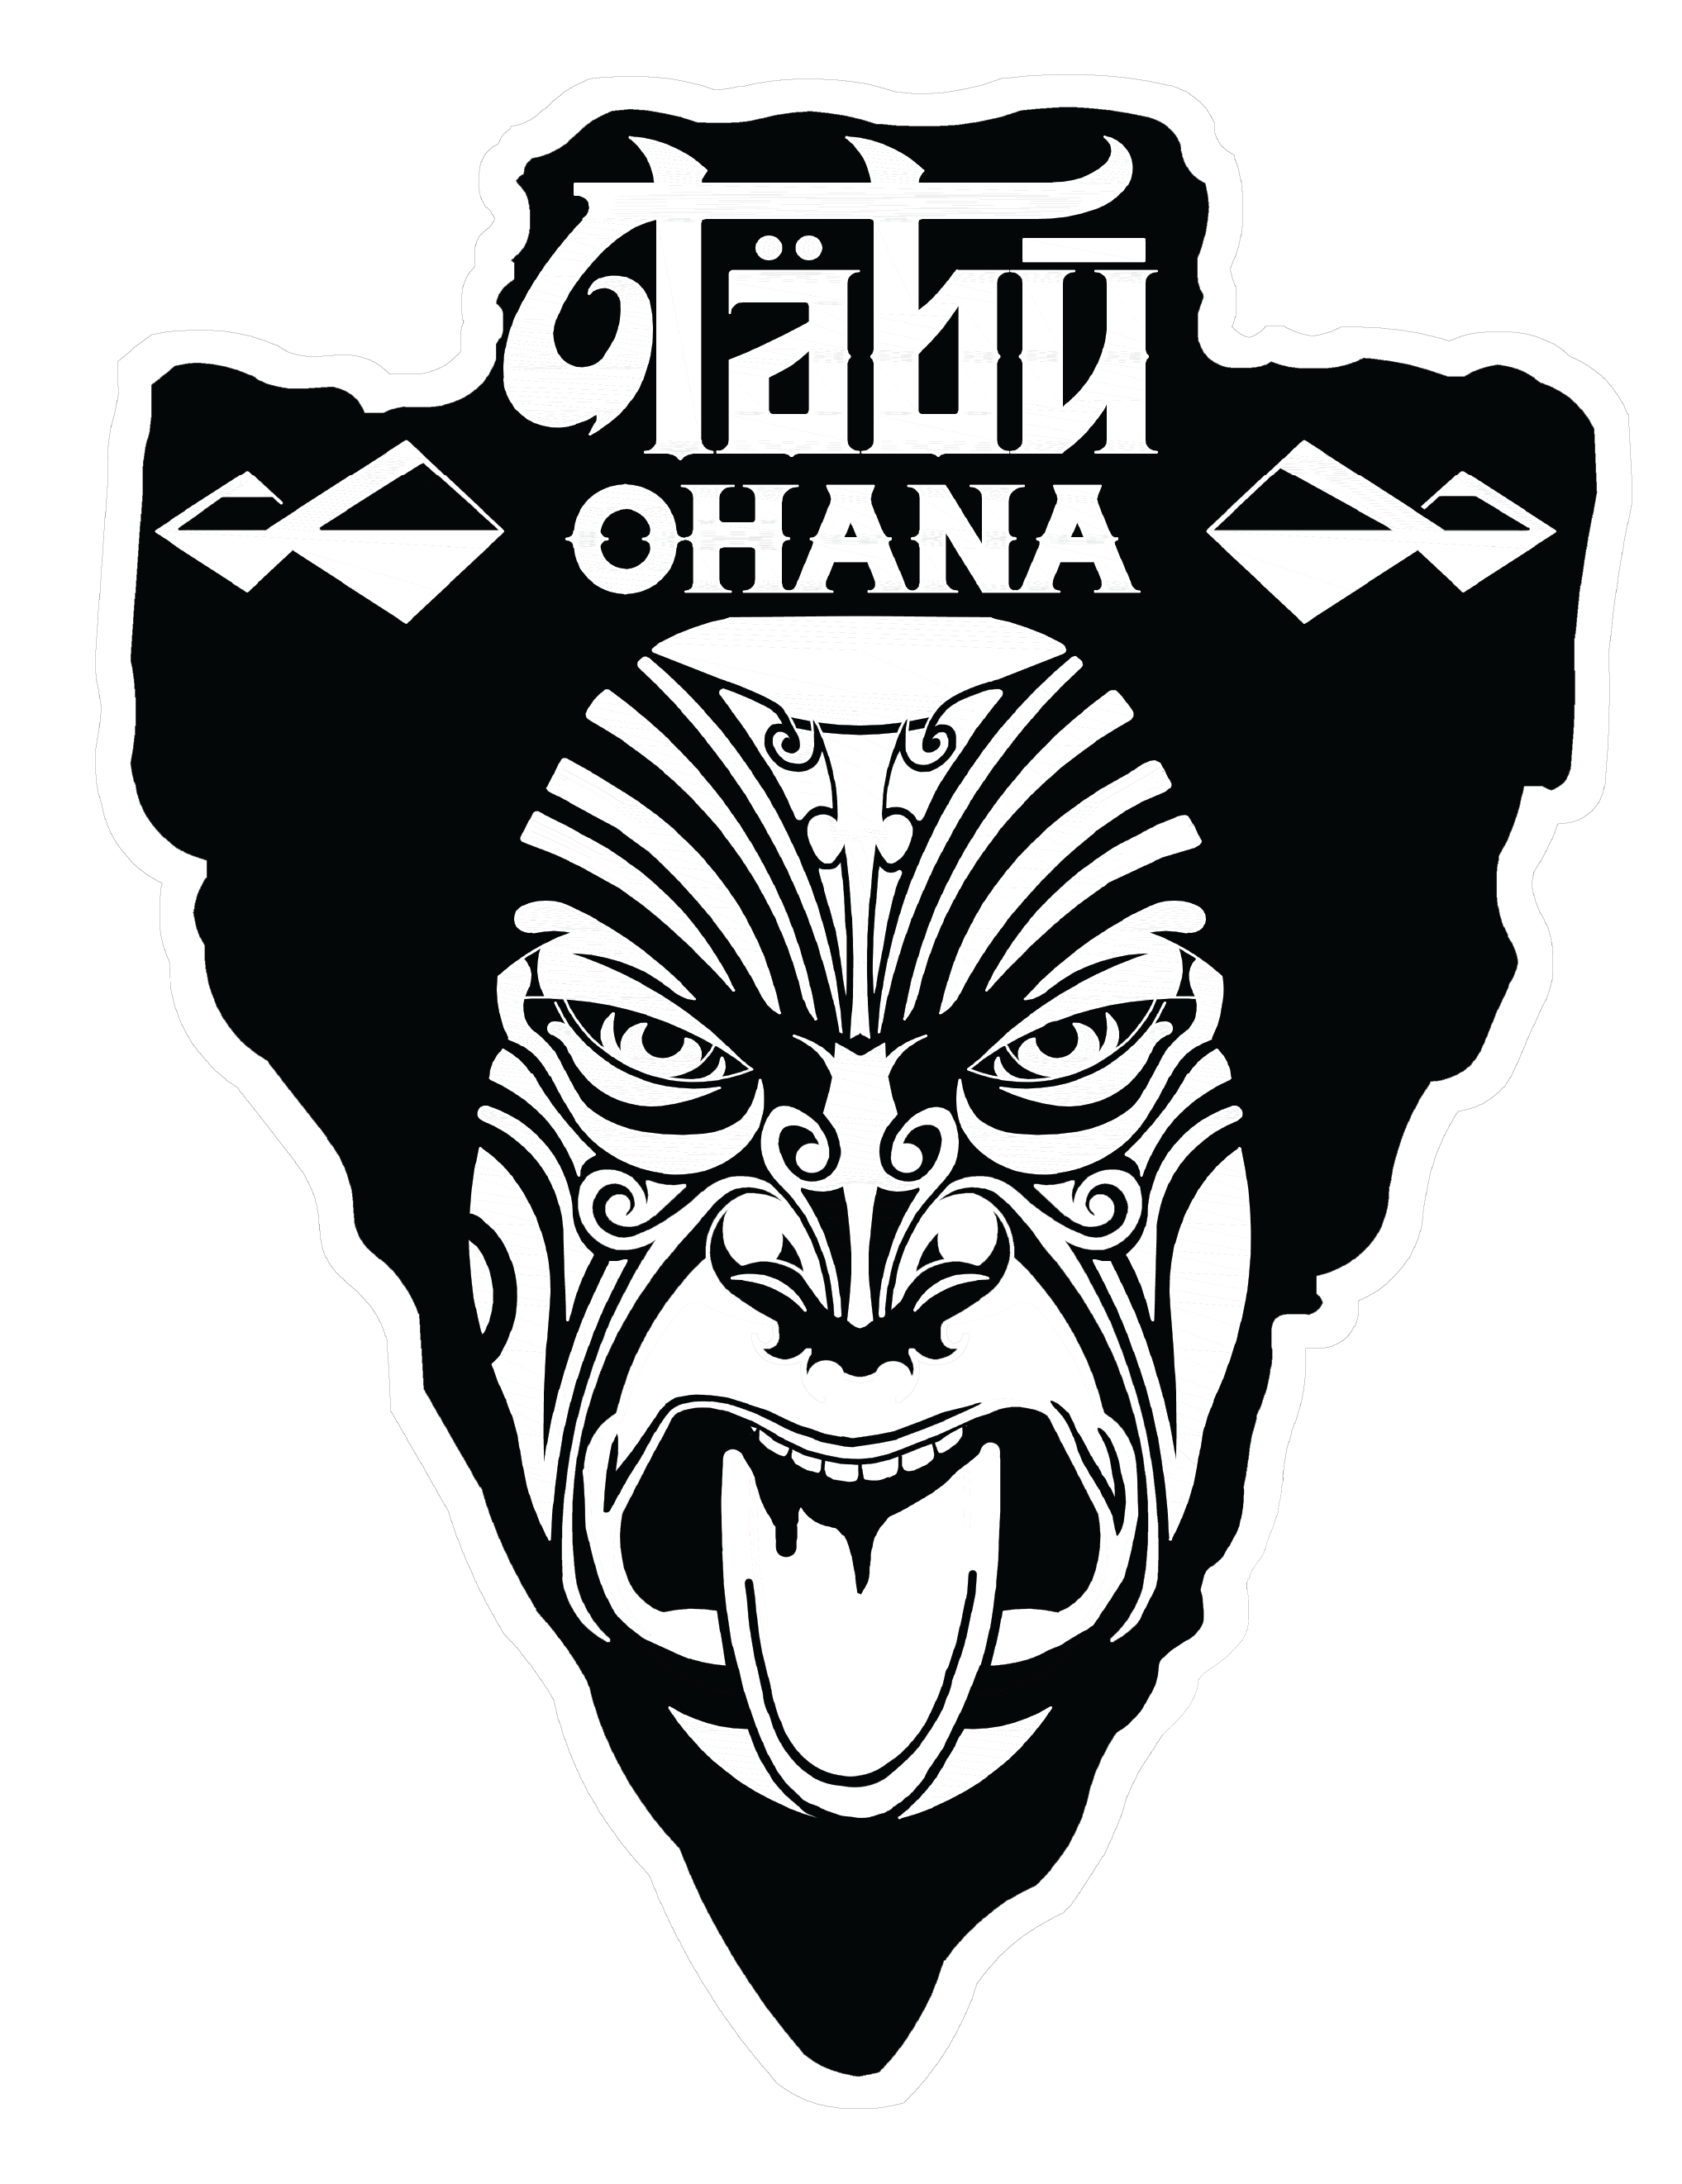 Tabu Ohana logo